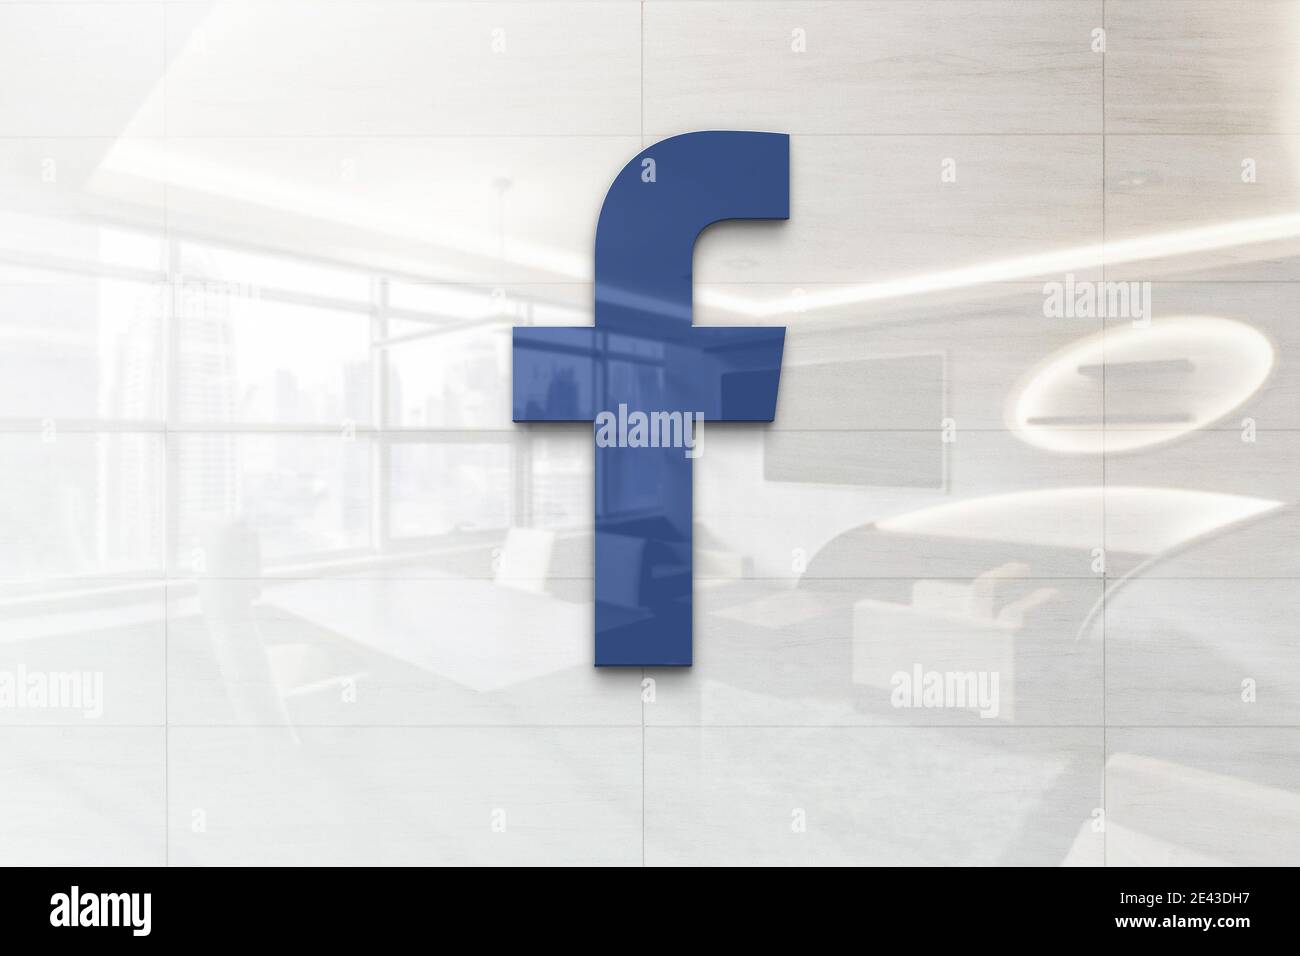 facebook-Logo auf reflektierender Business-Wandtafel Stockfoto